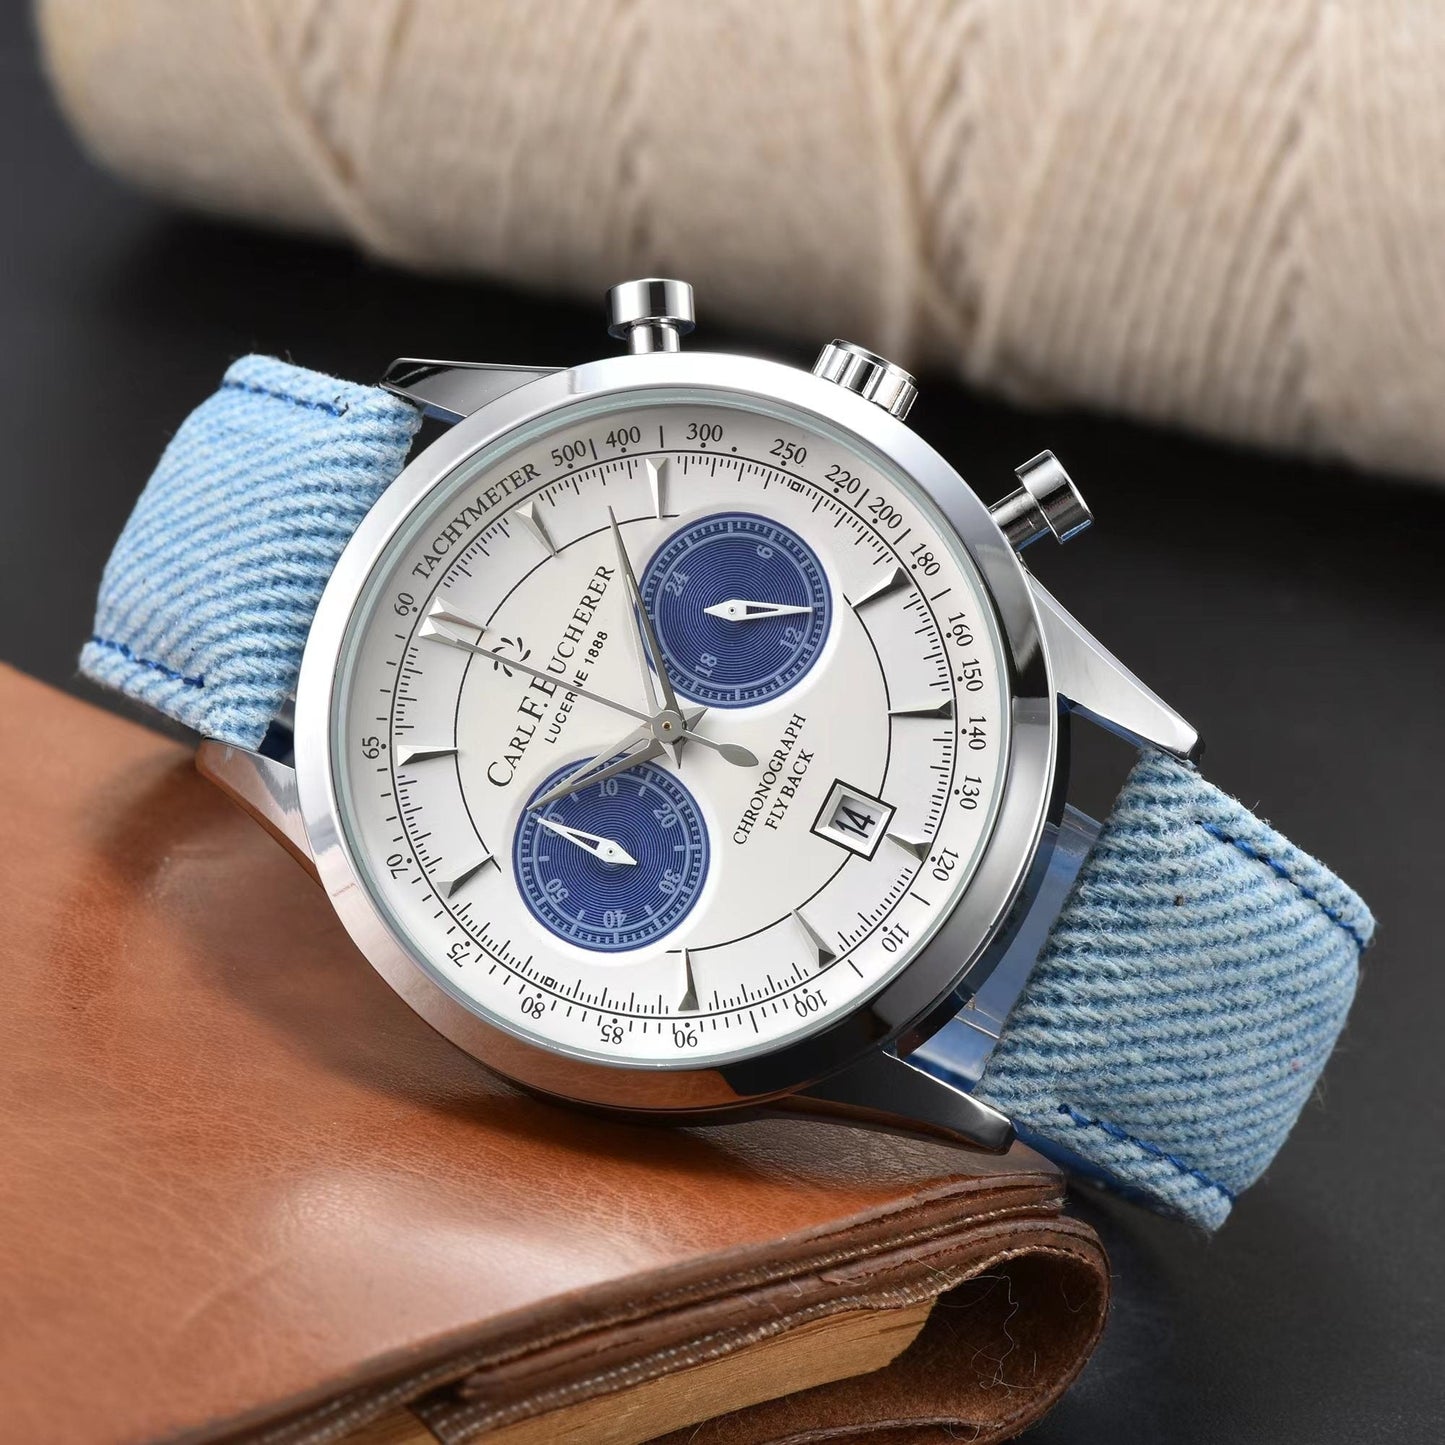 2023 Carl F. Bucherer Malelon Series Quartz Wristwatch - Westies Watches